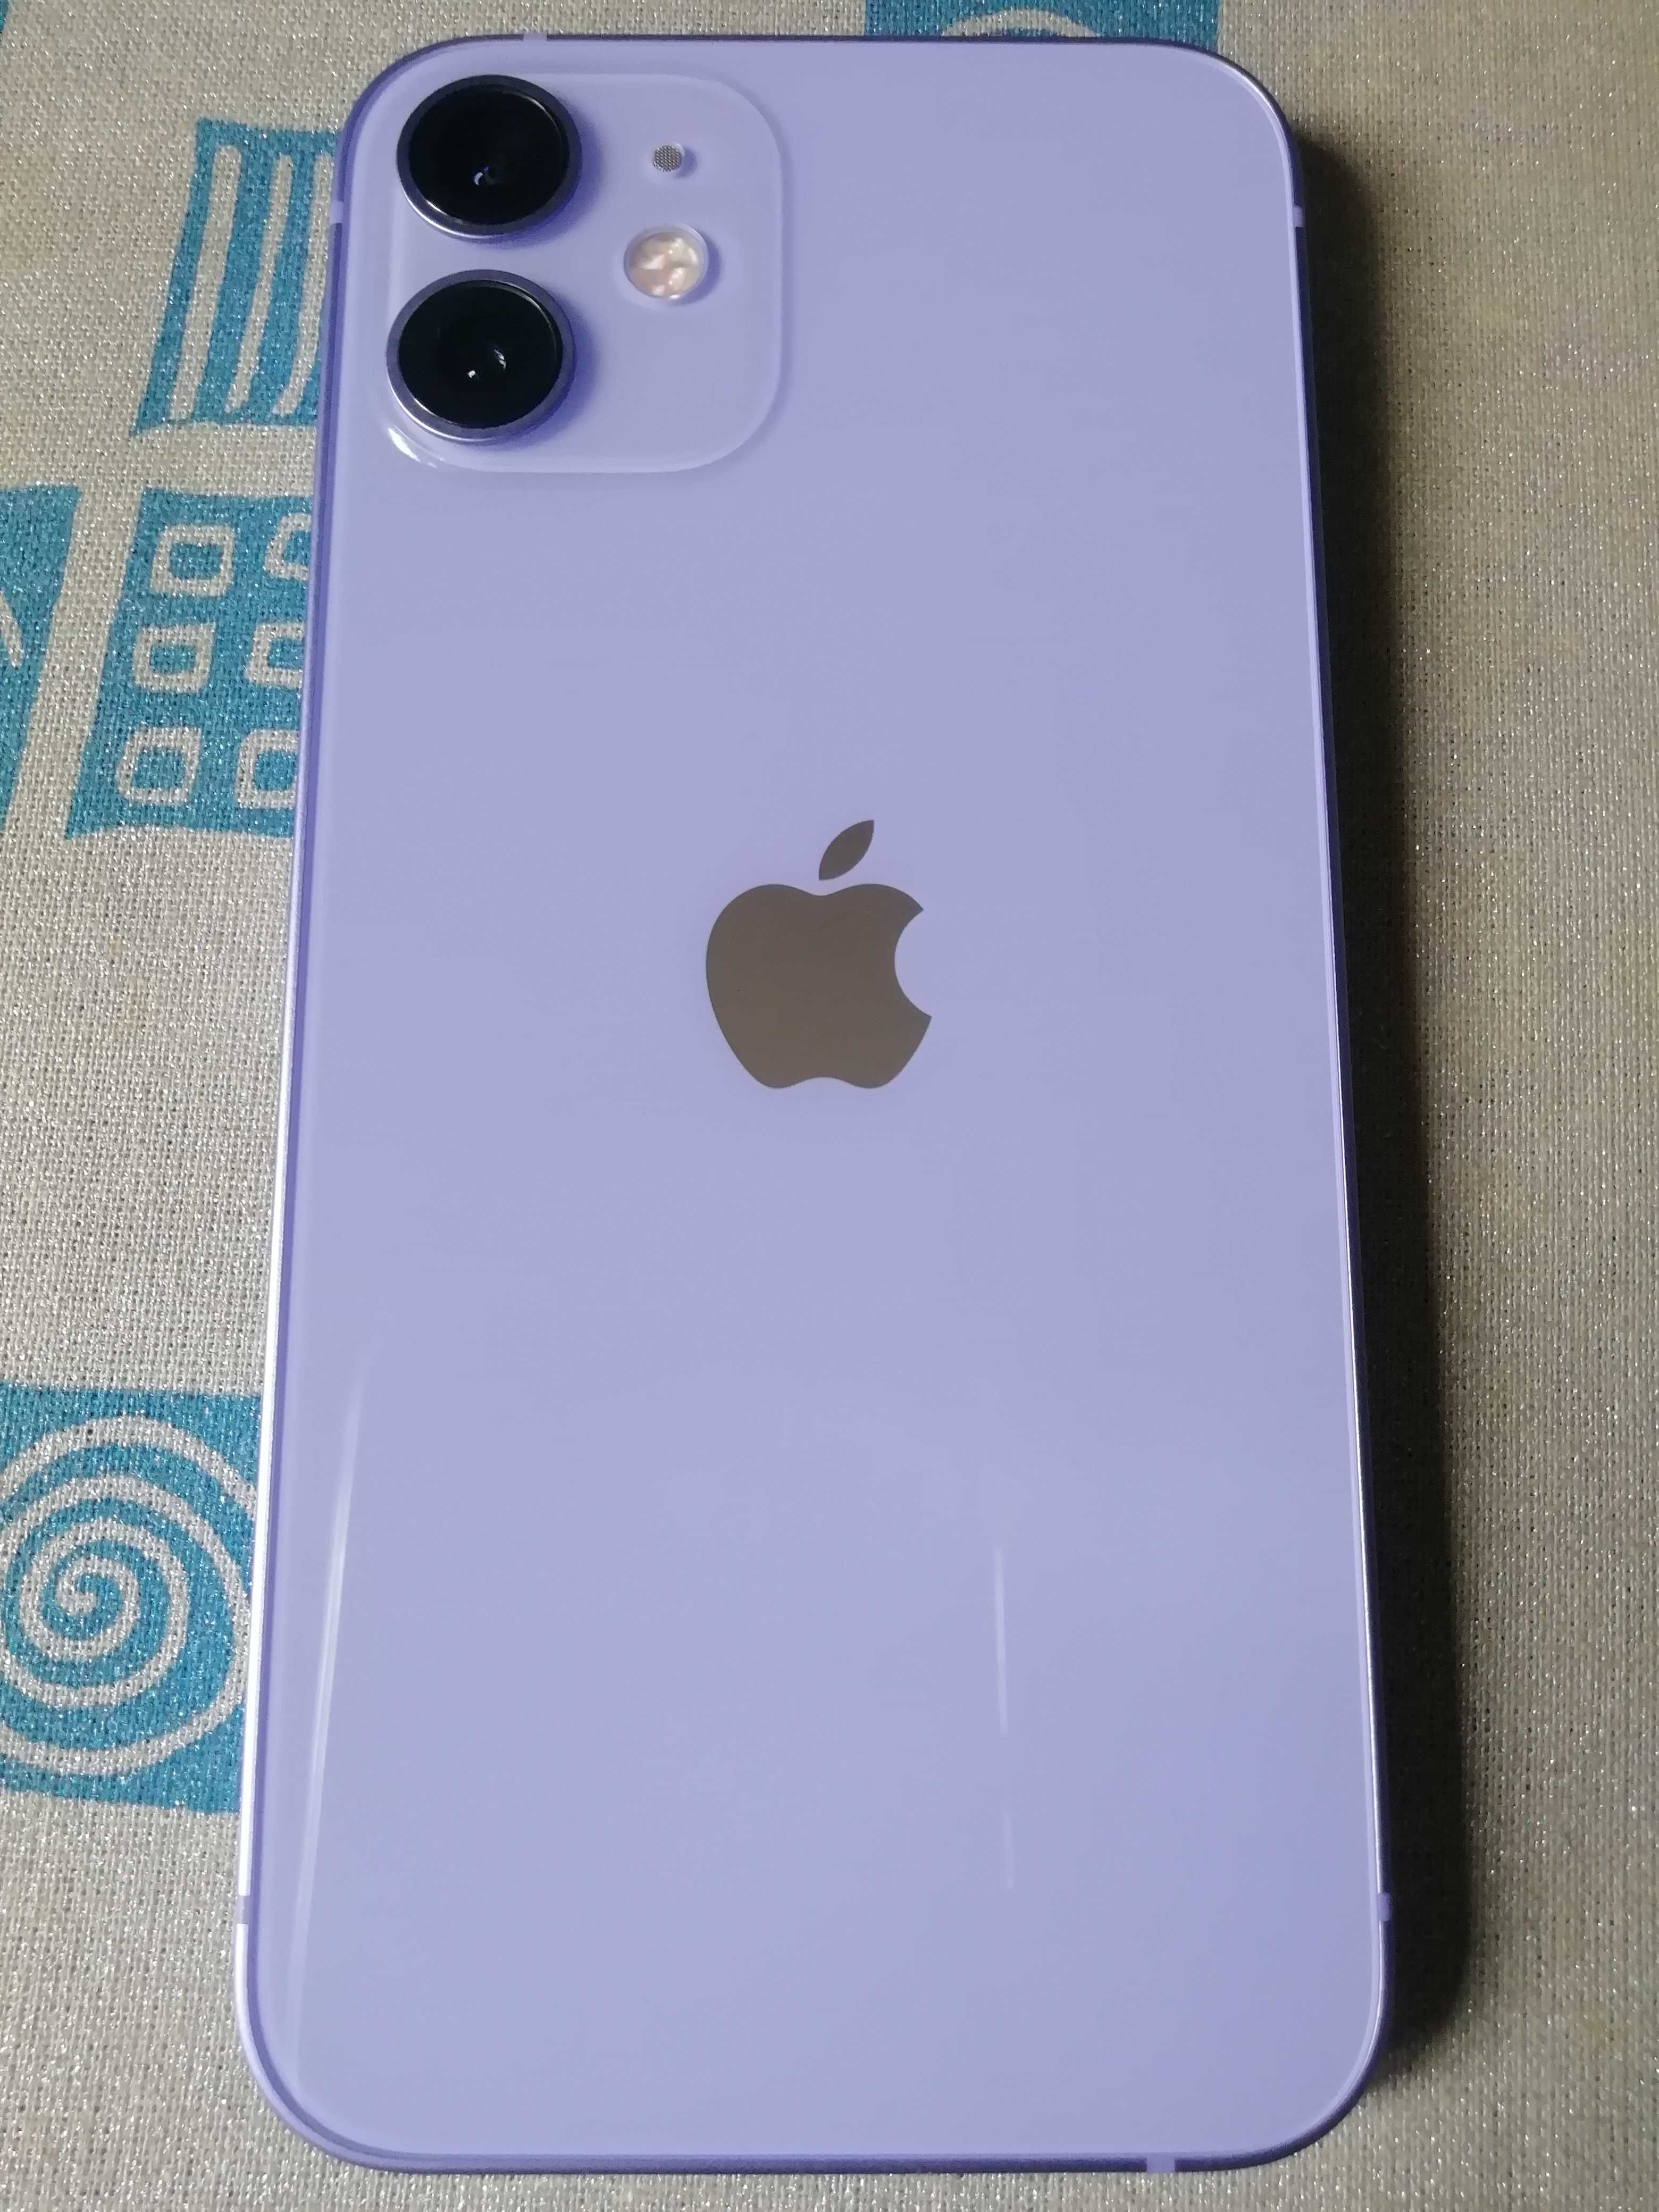 Apple Iphone 12 mini 128gb Purple